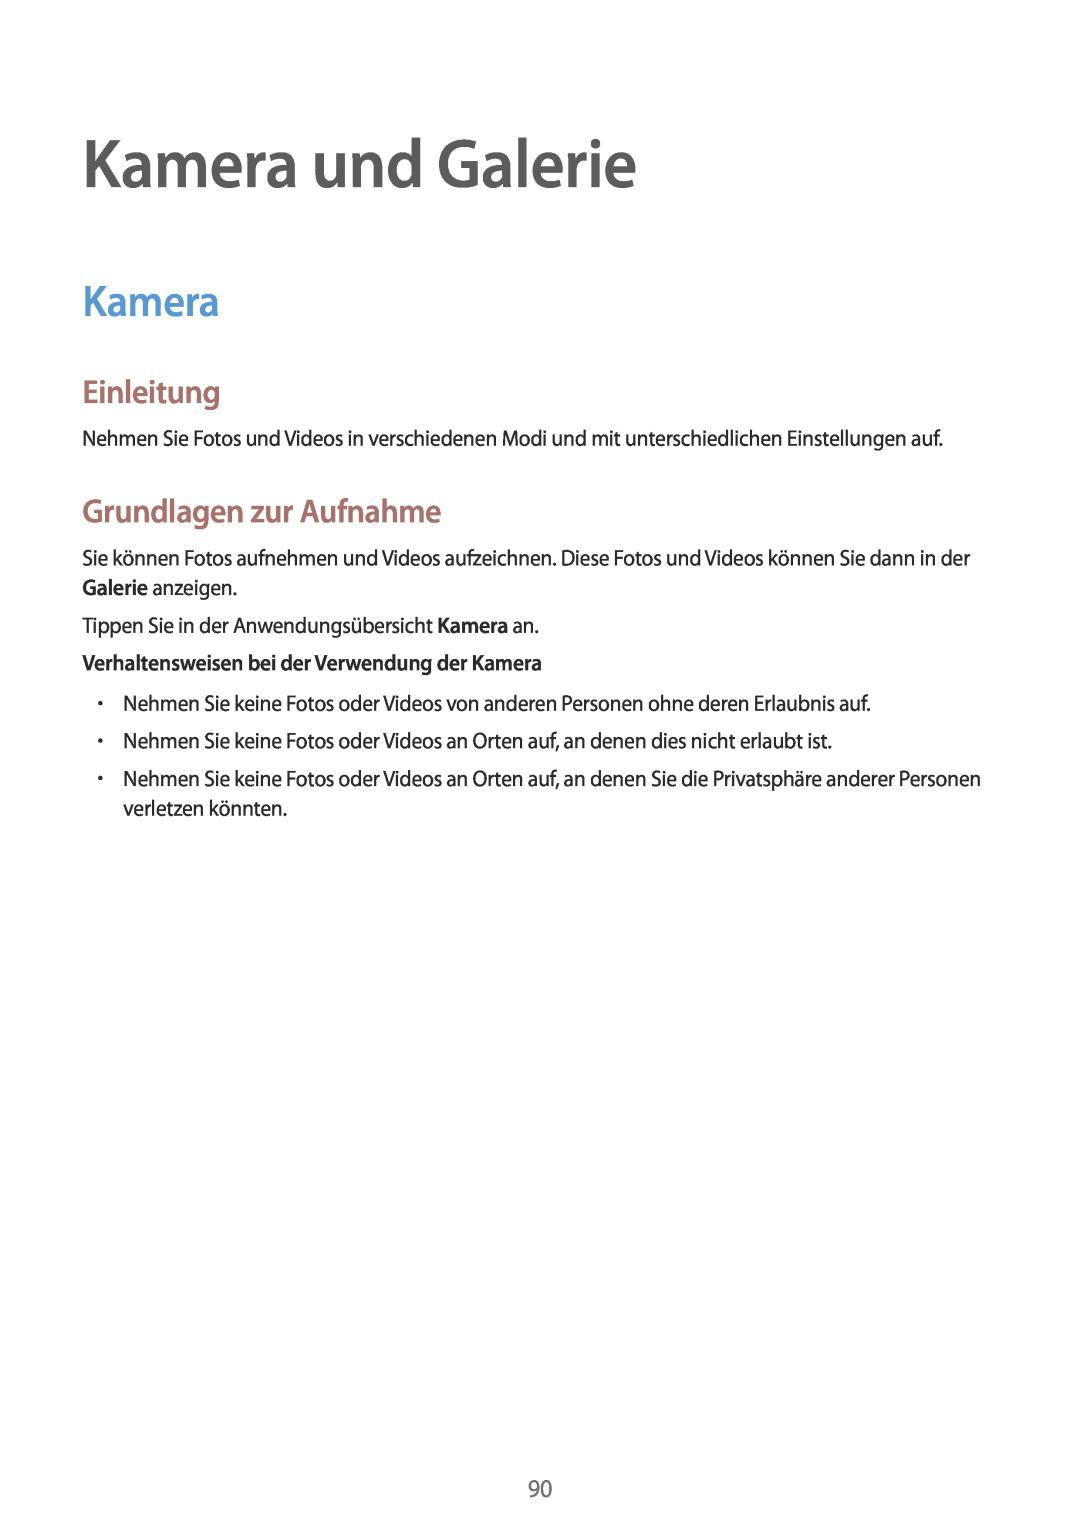 Samsung SM-N910FZKEXEF manual Kamera und Galerie, Grundlagen zur Aufnahme, Verhaltensweisen bei der Verwendung der Kamera 